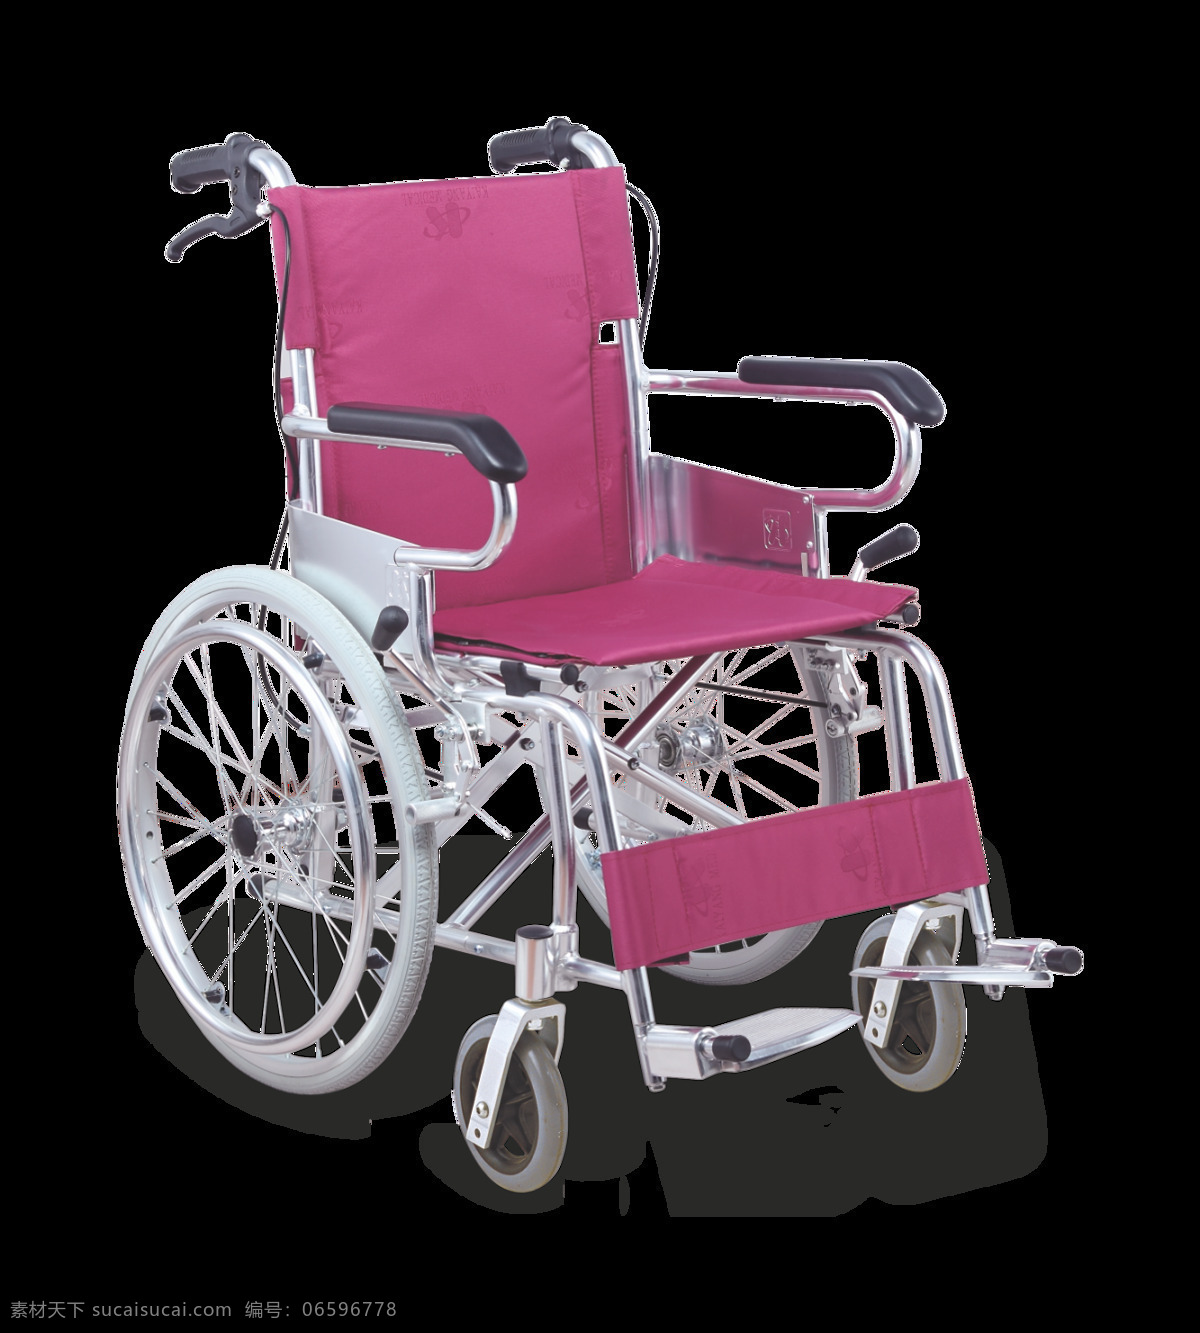 红色 轮椅 免 抠 透明 图 层 木轮椅 越野轮椅 小轮轮椅 手摇轮椅 轮椅轮子 车载轮椅 老年轮椅 竞速轮椅 轮椅设计 残疾轮椅 折叠轮椅 智能轮椅 医院轮椅 轮椅图片